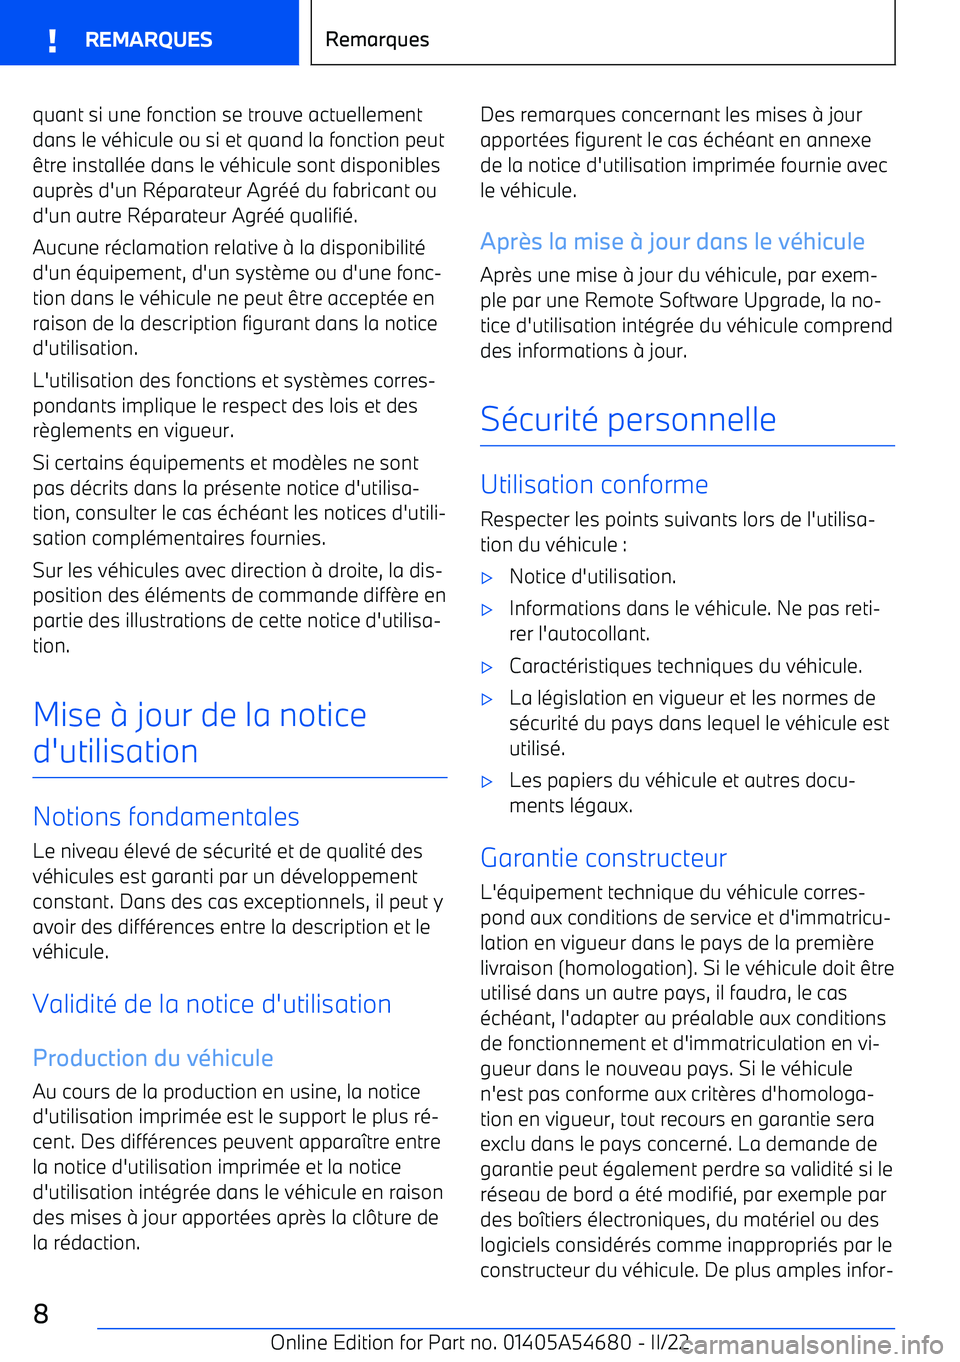 BMW I4 2022  Notices Demploi (in French) quant si une fonction se trouve actuellementdans le v